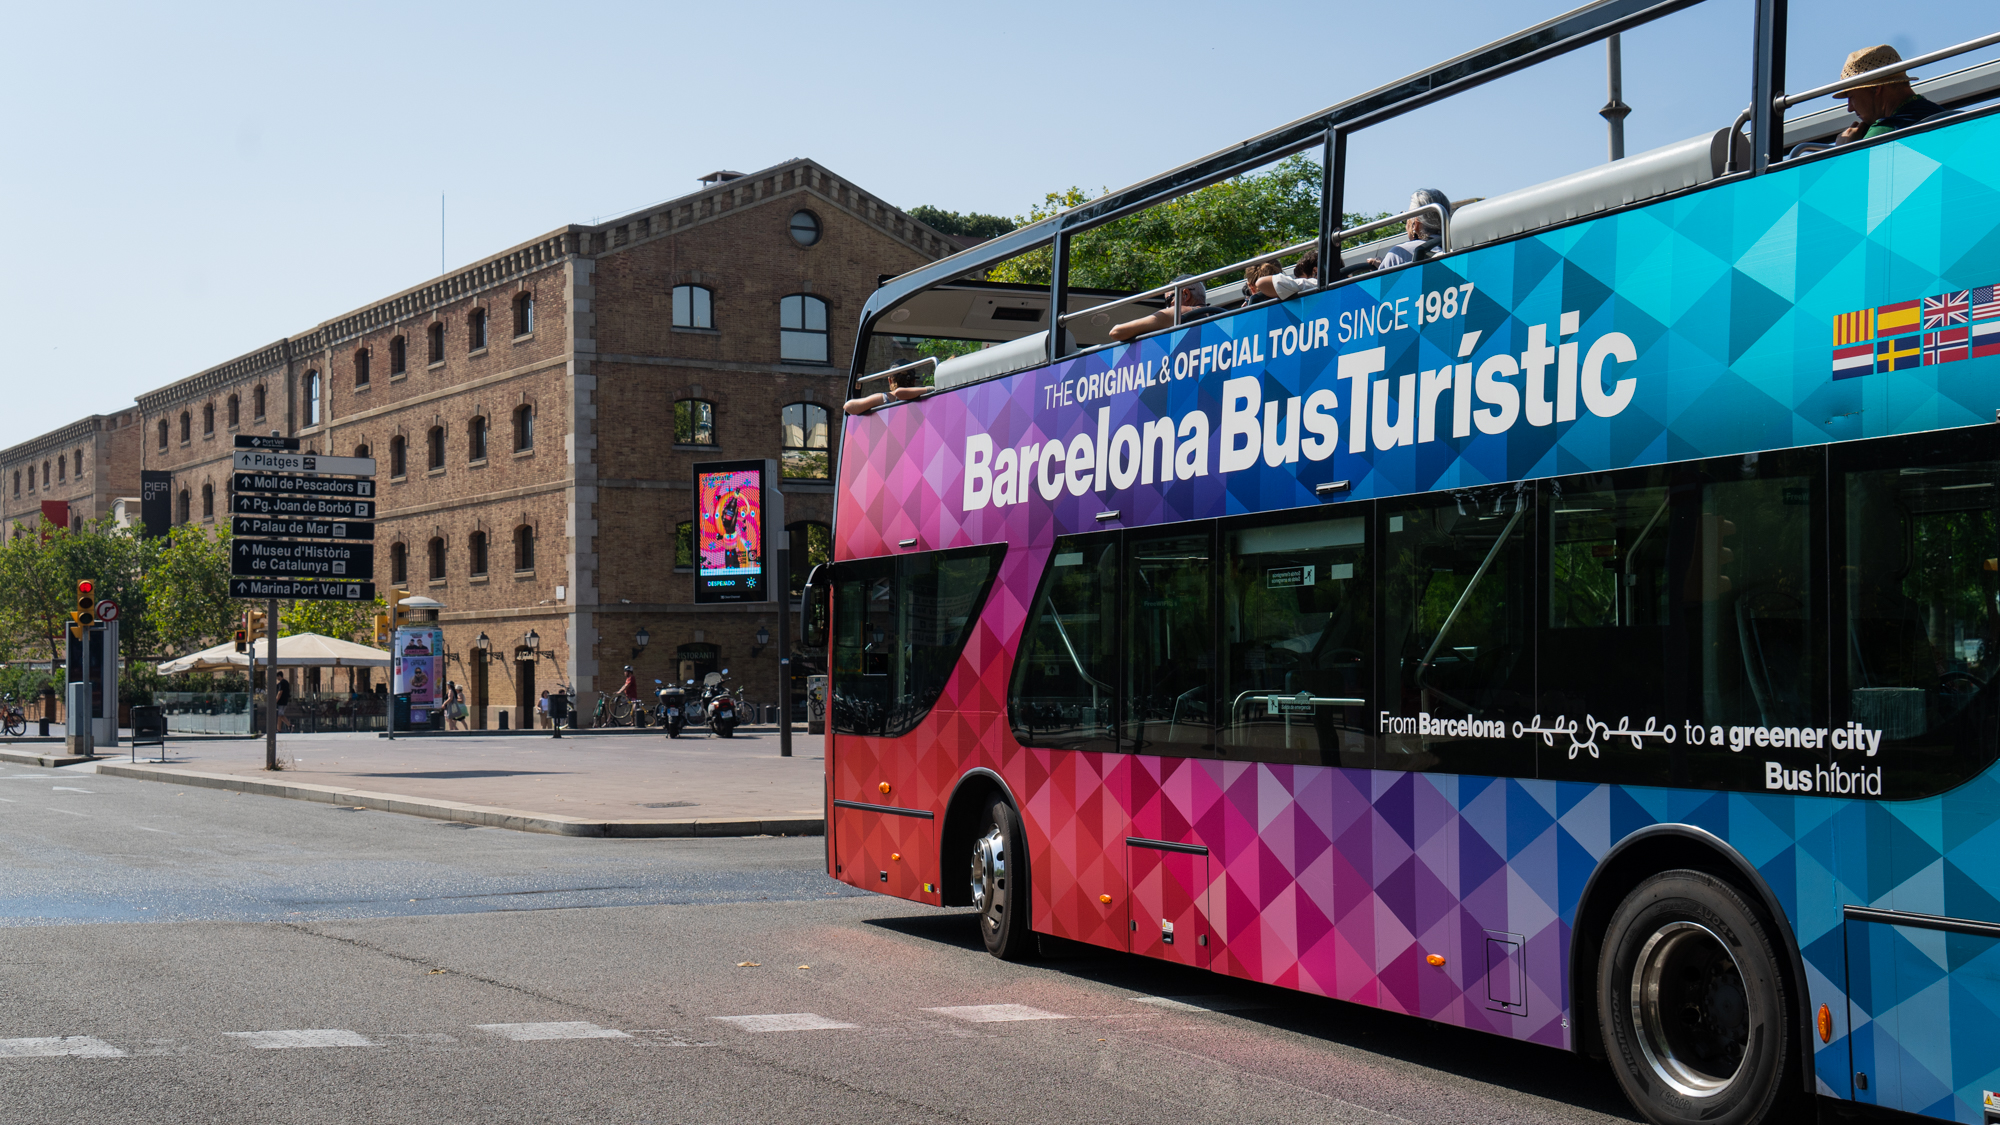 Bus touristique barcelone